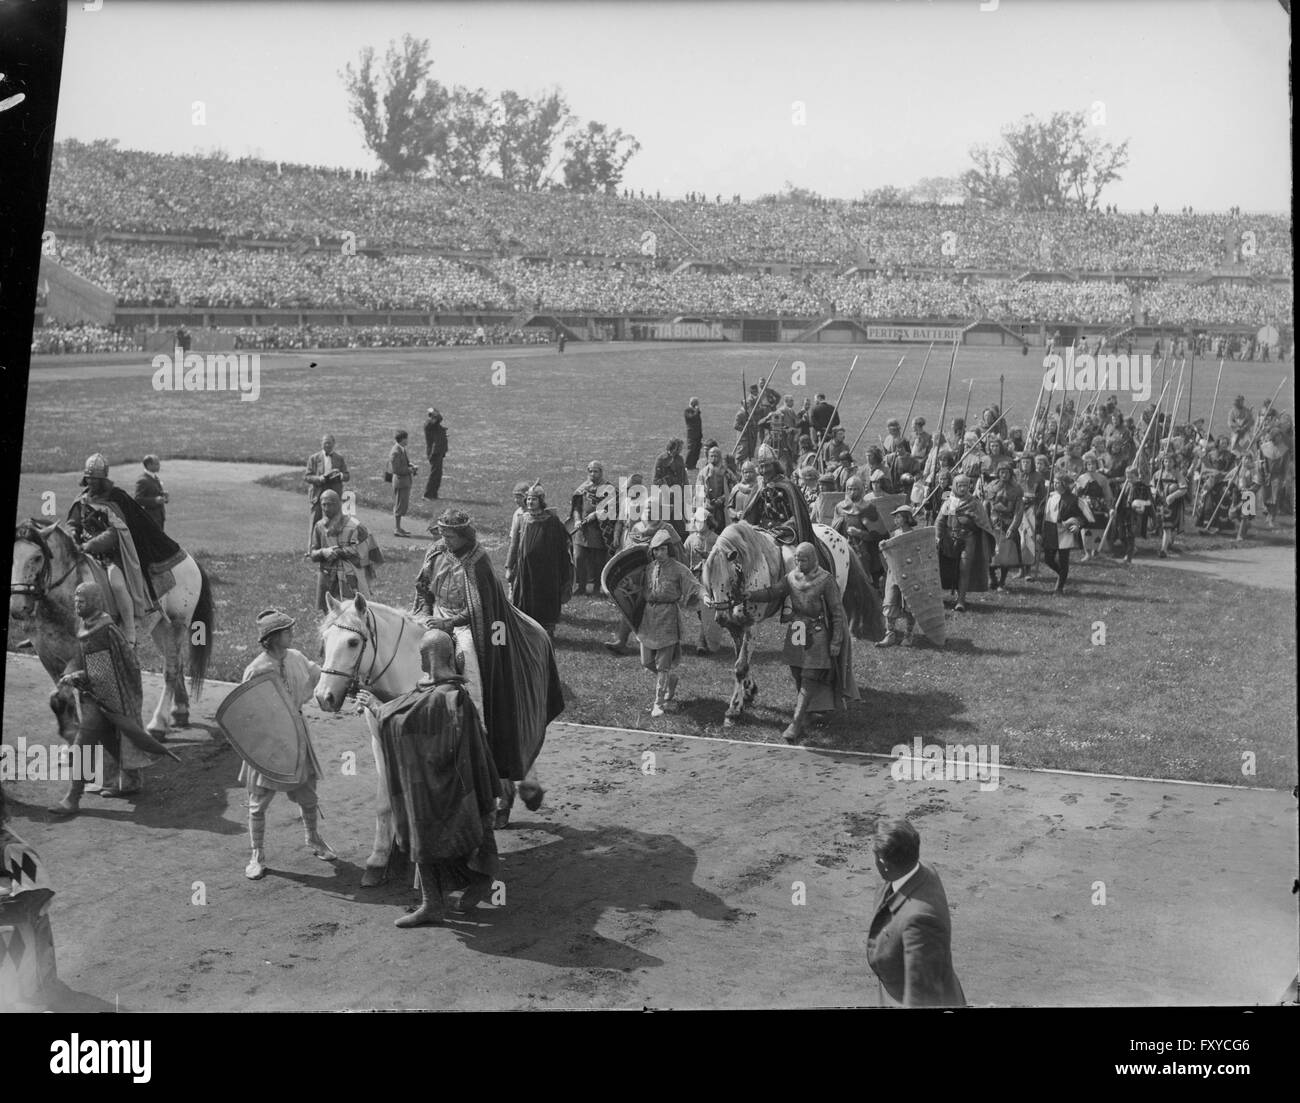 Kinder-Huldigung mit Festspiel im Wiener Stadion, 1.5.1934 Stock Photo